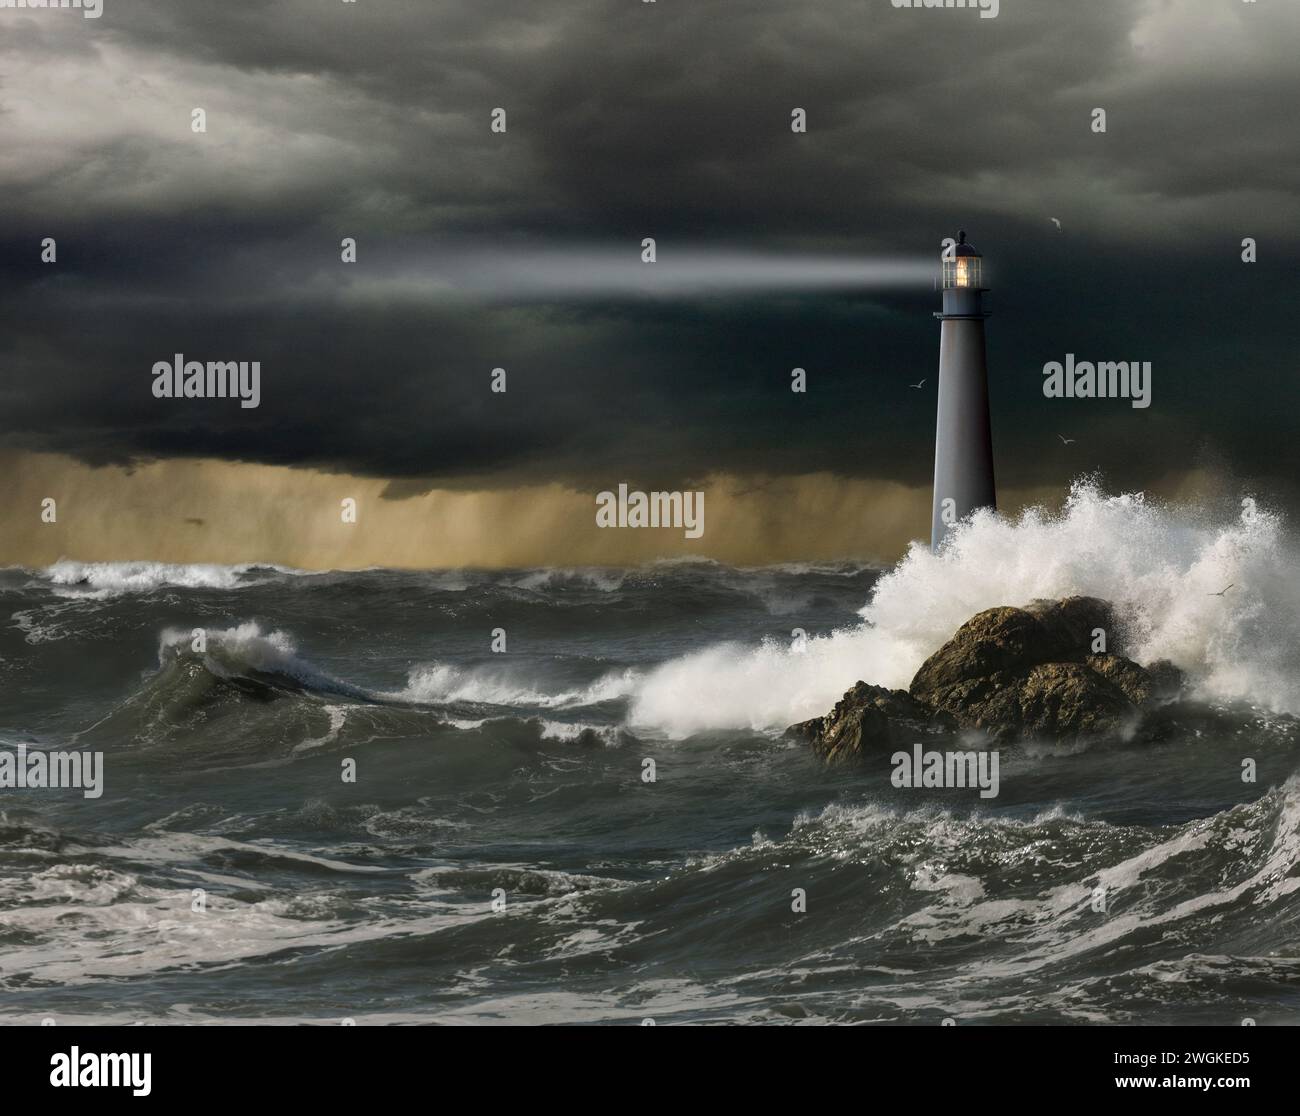 Un phare projette son faisceau de lumière guidant sur des mers agitées sous un ciel orageux dans une image sur la sécurité, l'adversité et la sécurité. Banque D'Images